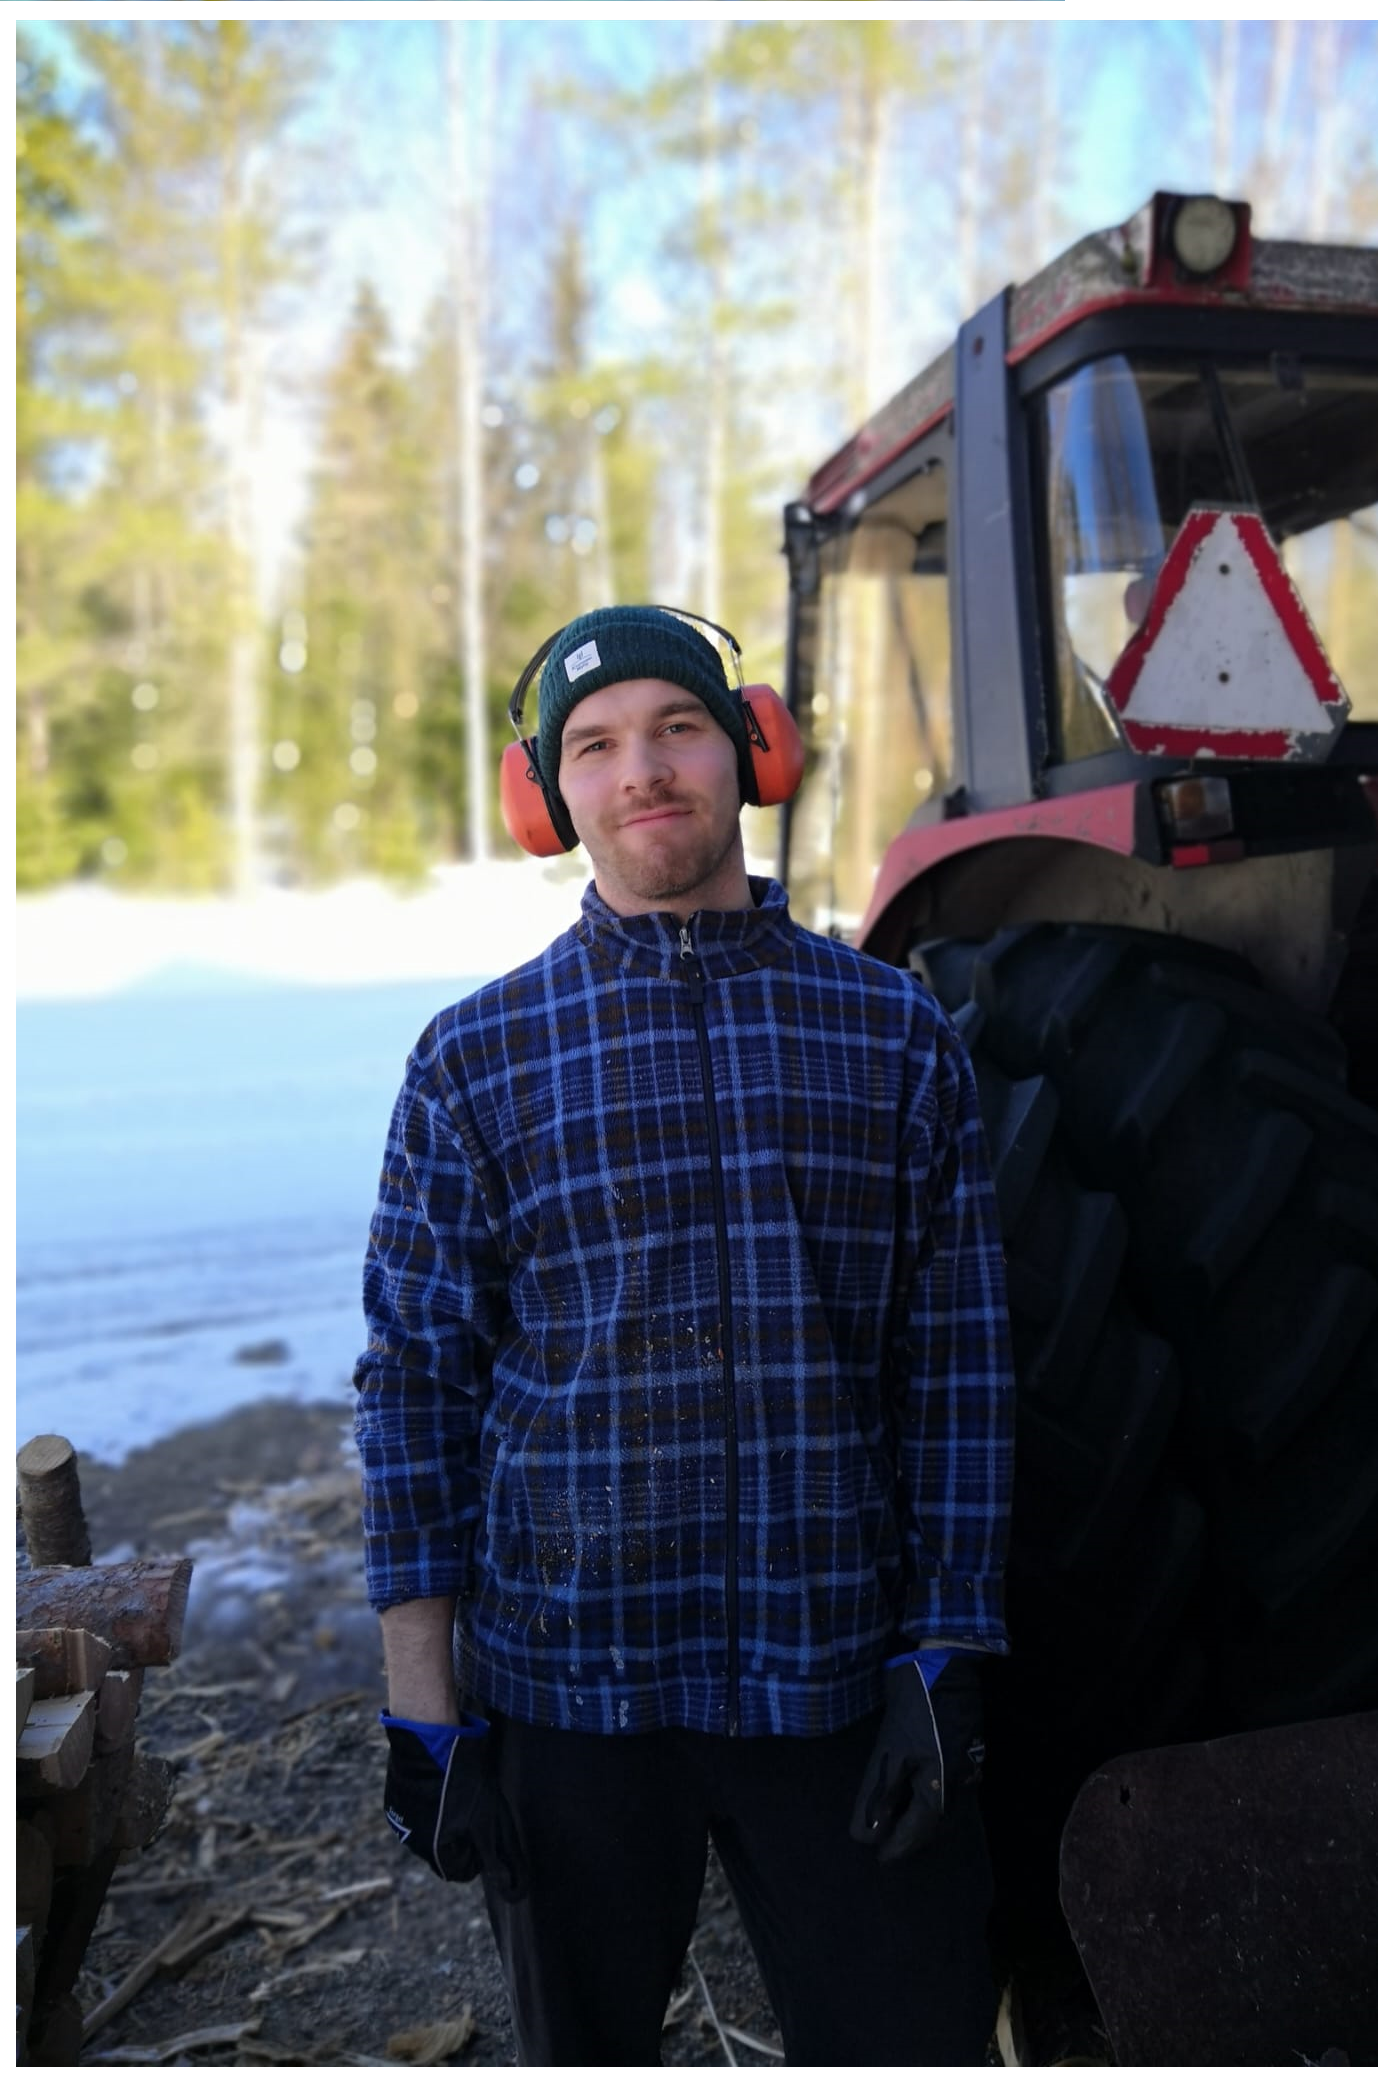 Kuvassa opiskeluhuollon psykologi Petteri Ruuhijärvi ulkona traktorin edessä, kuulokkeet päässään ja katsoo kameraan.